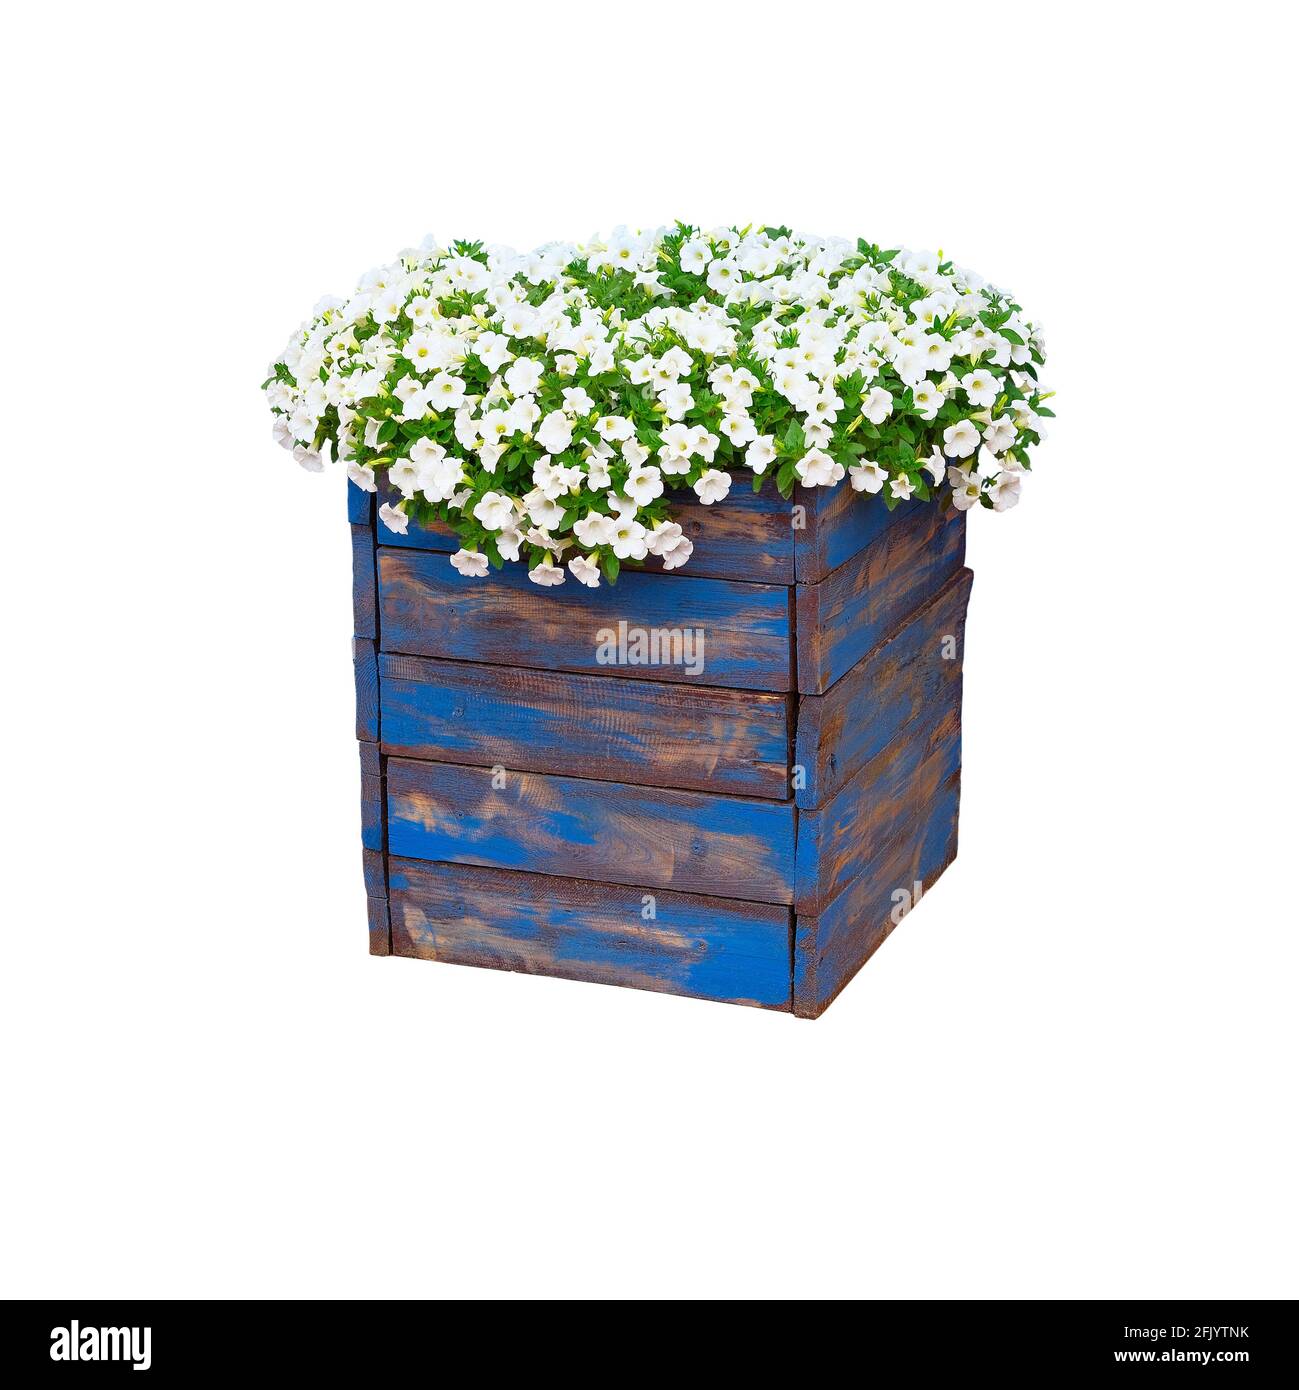 Topf mit Strauch blühender Pflanze für Landschaftsgestaltung. Bush mit vielen kleinen weißen Blüten in blauem Holzblumentopf. Isoliert auf weißem Hintergrund. Stockfoto